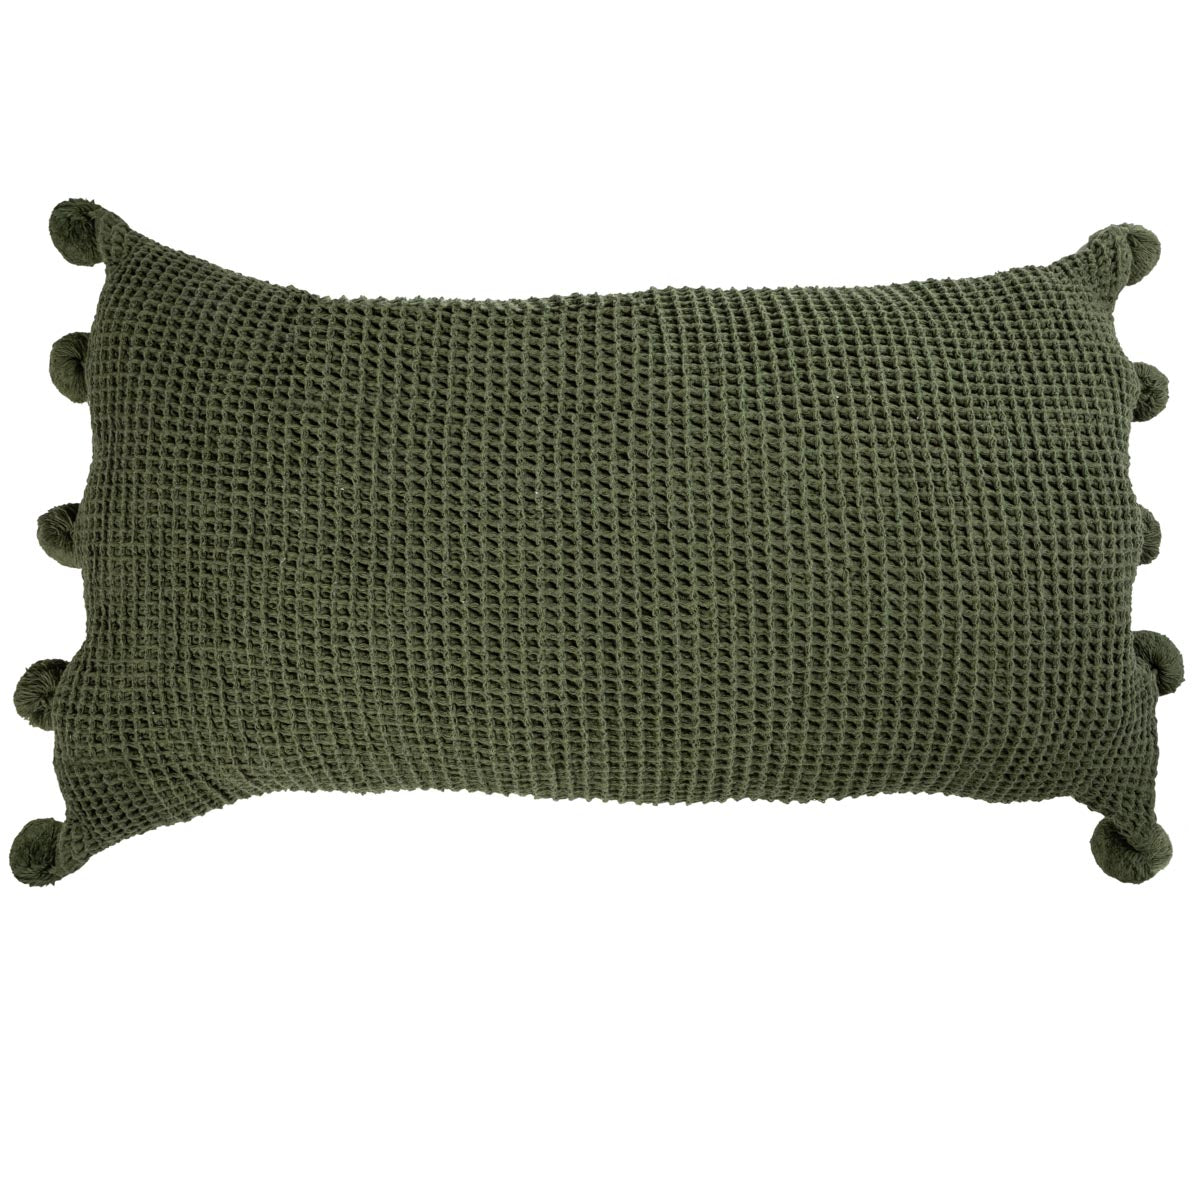 Pom pom cushion cover, green